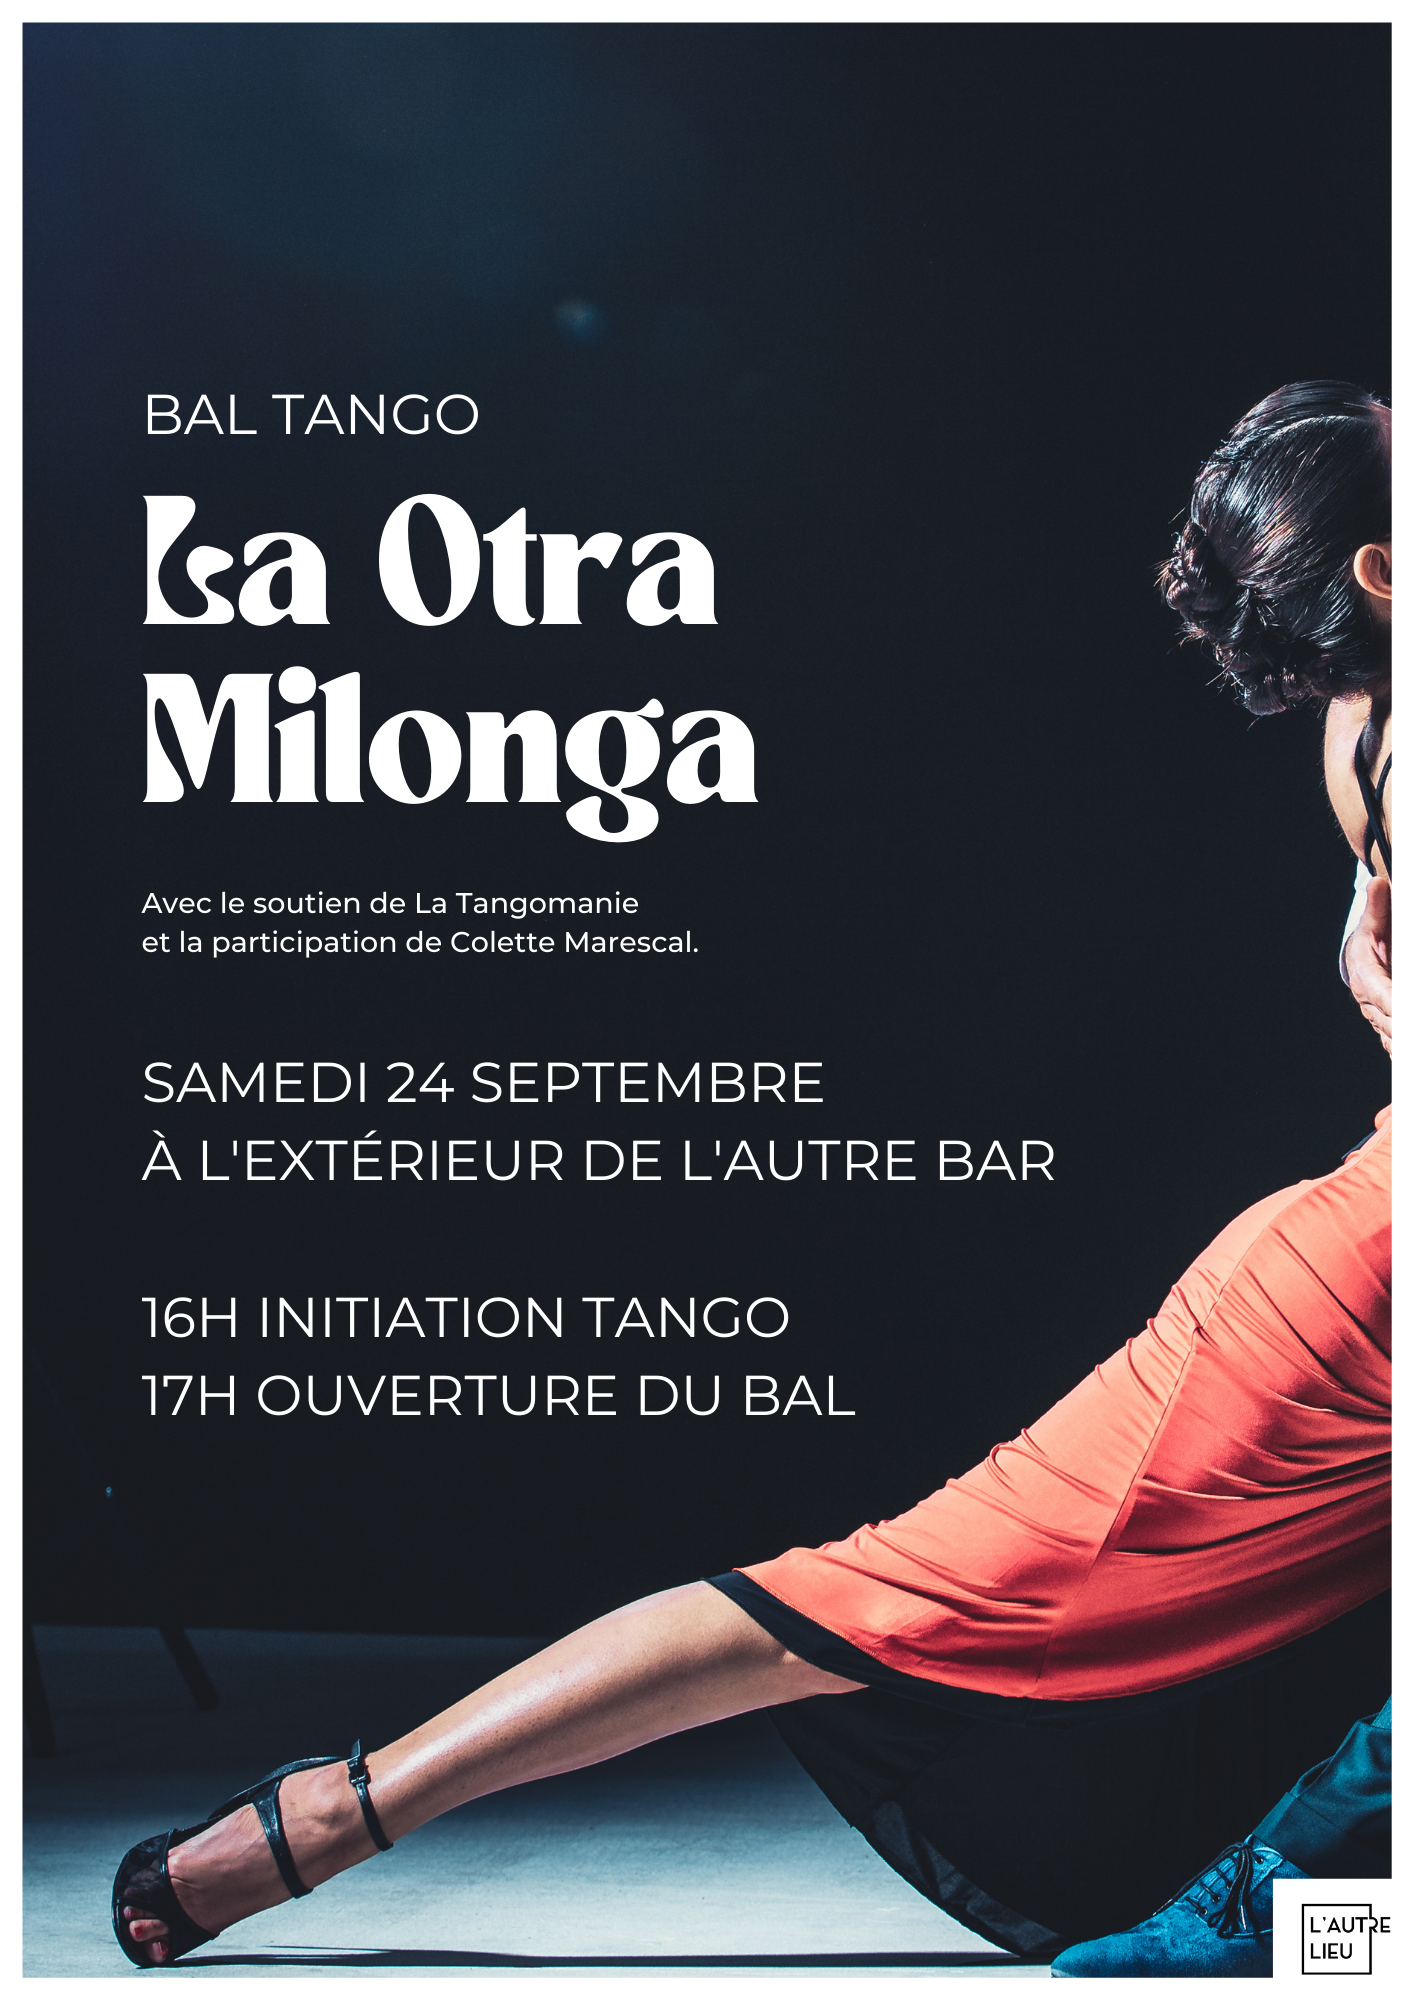 La Otra Milonga, le bal Tango